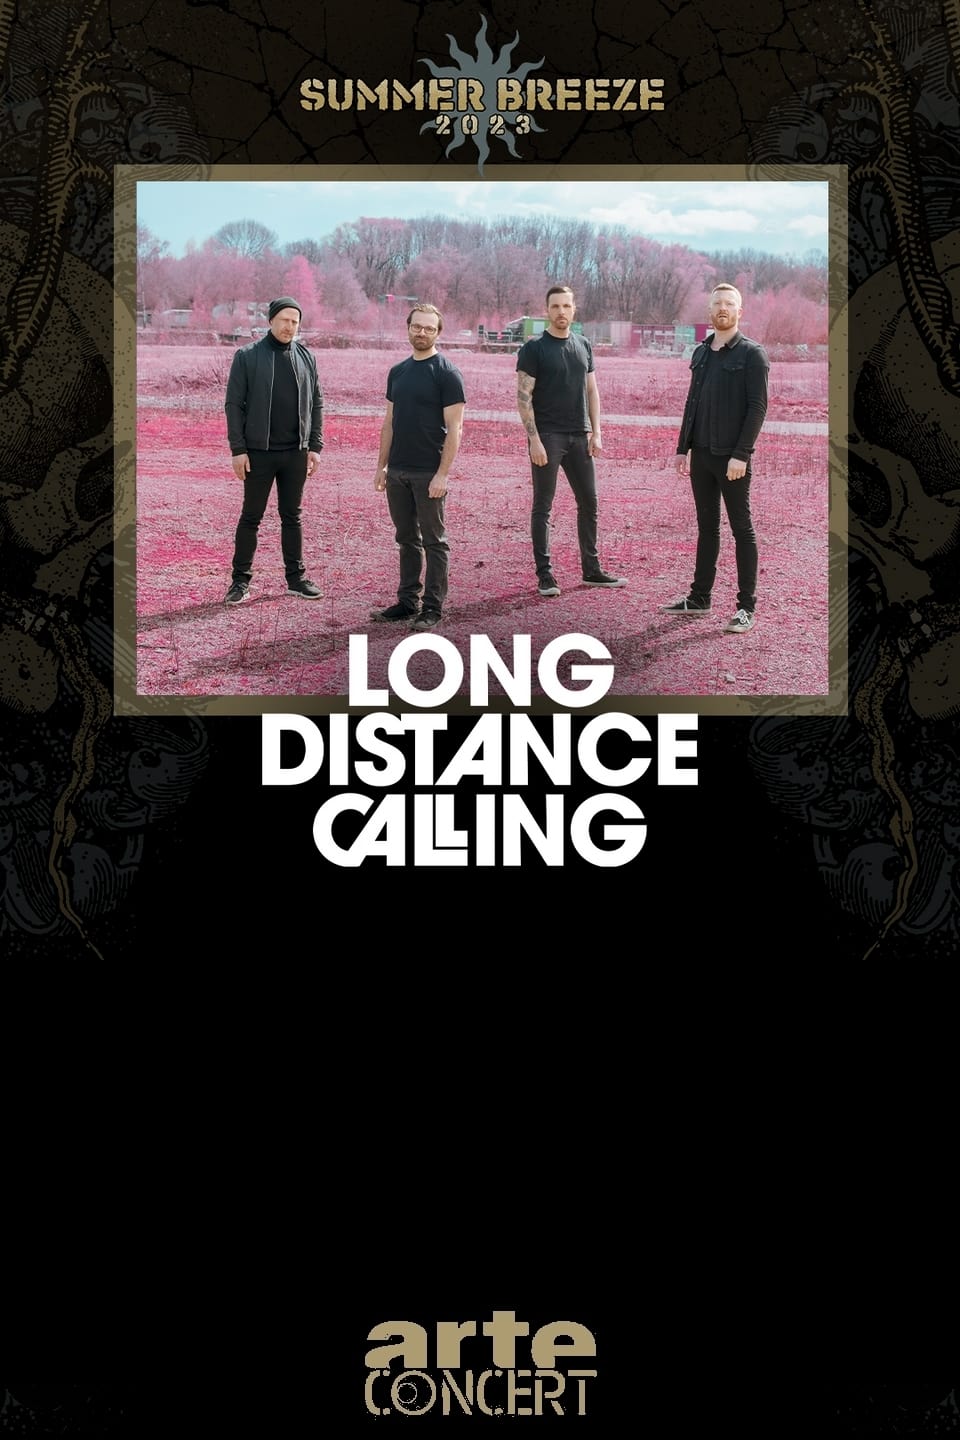 Long Distance Calling - Summer Breeze 2023